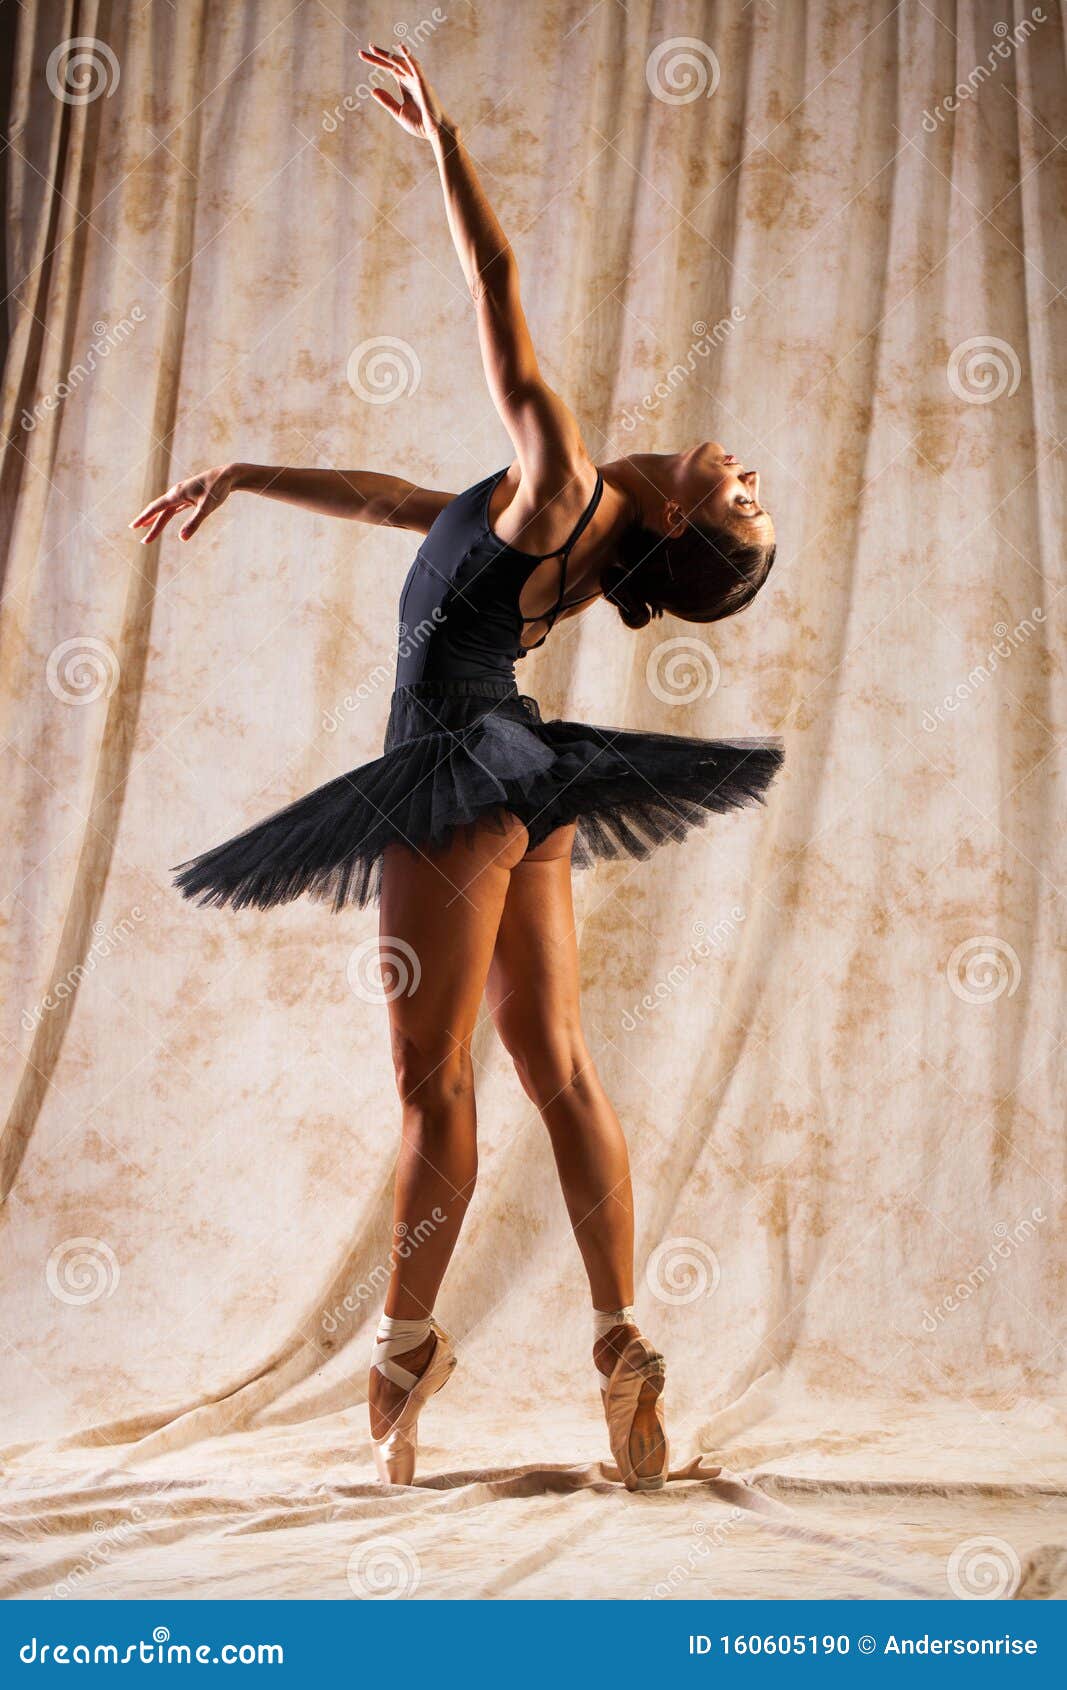 Body Portrait. Russian Ballerina in a Dancing Suit is Posing in Dark Studio Stock Photo - Image of caucasian: 160605190